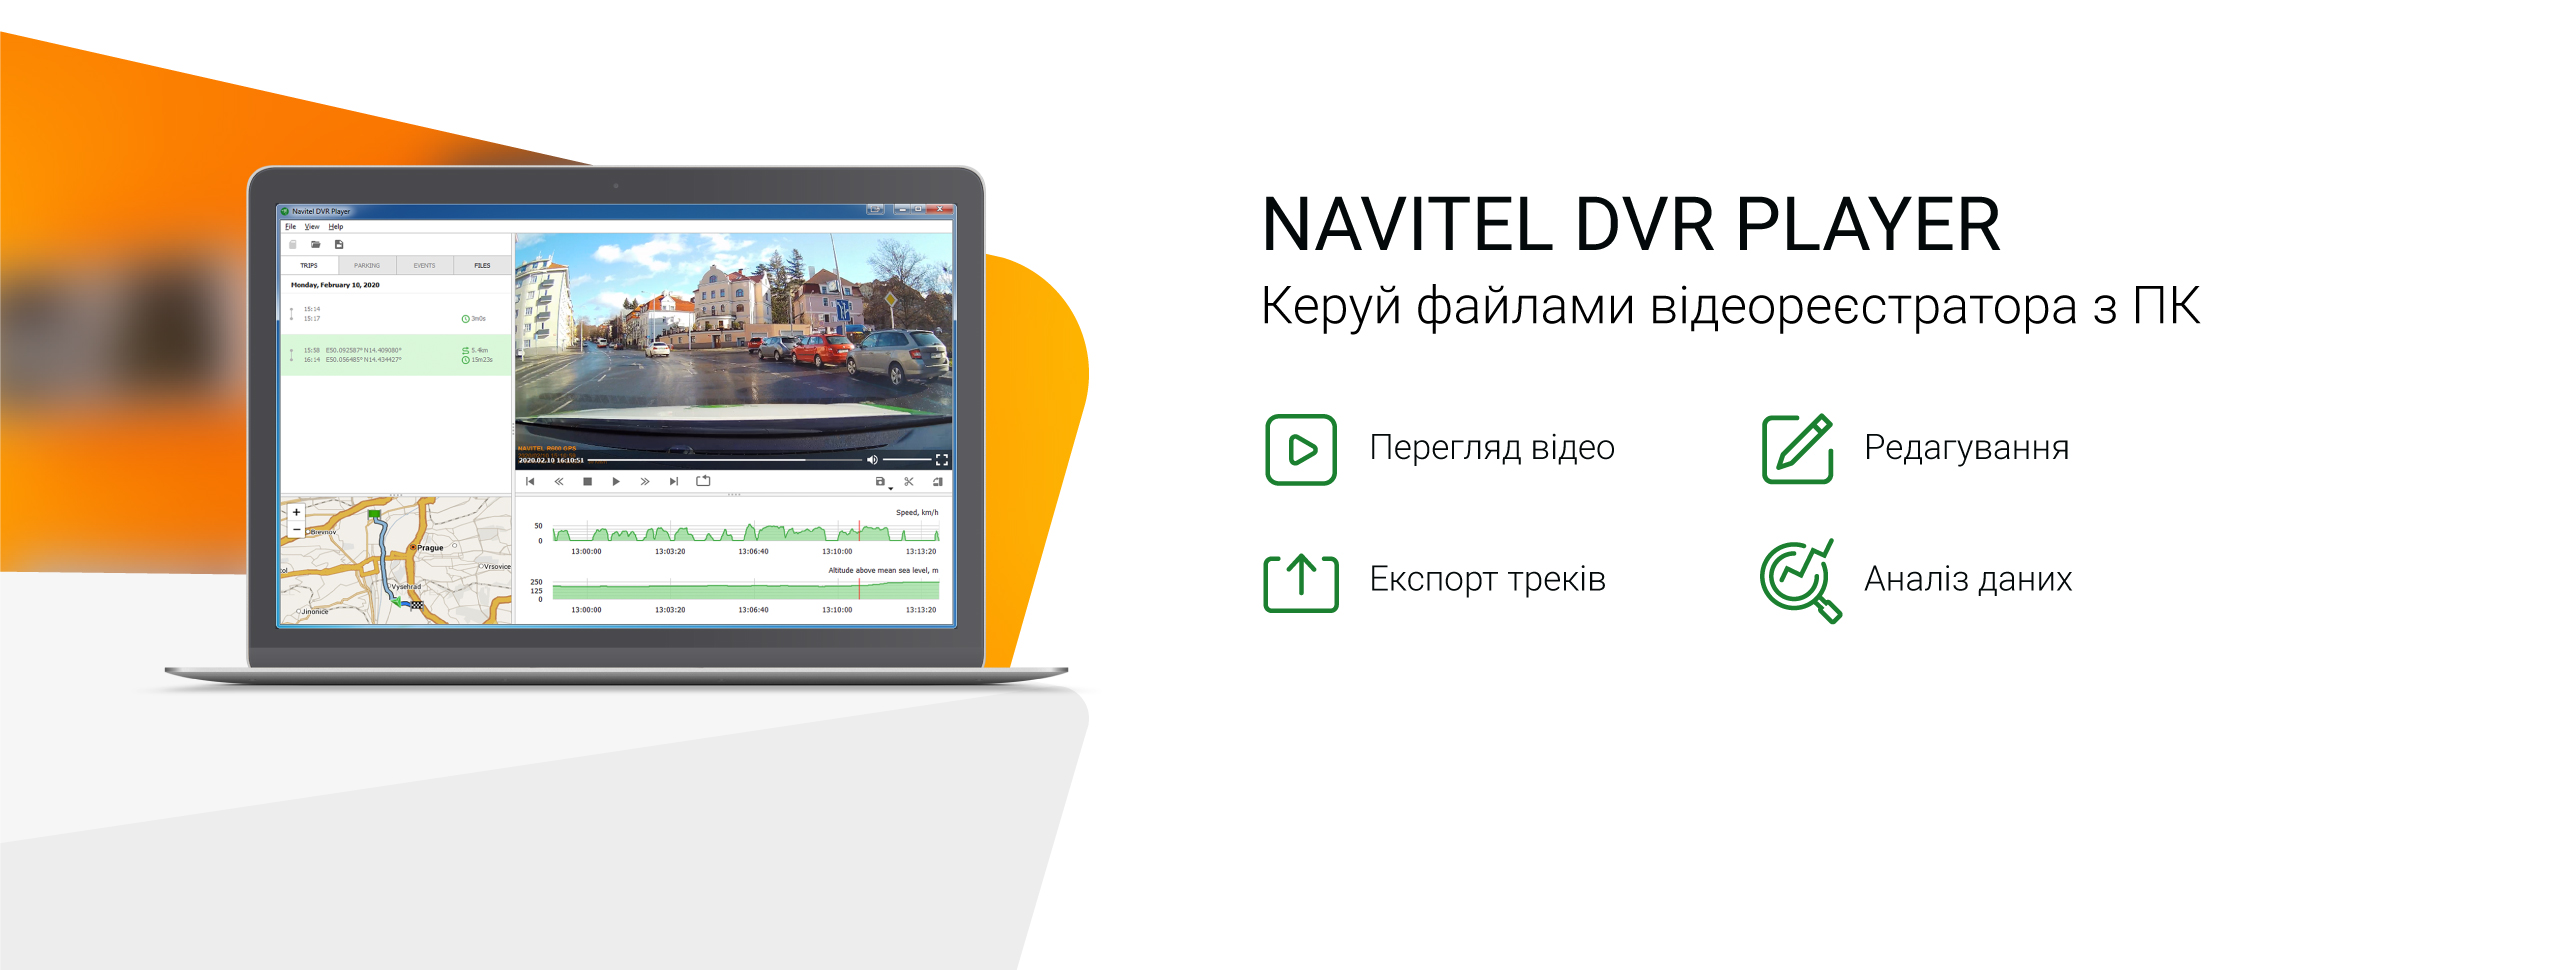 Програма Navitel DVR Player для власників відеореєстраторів і ПК на ОС Windows